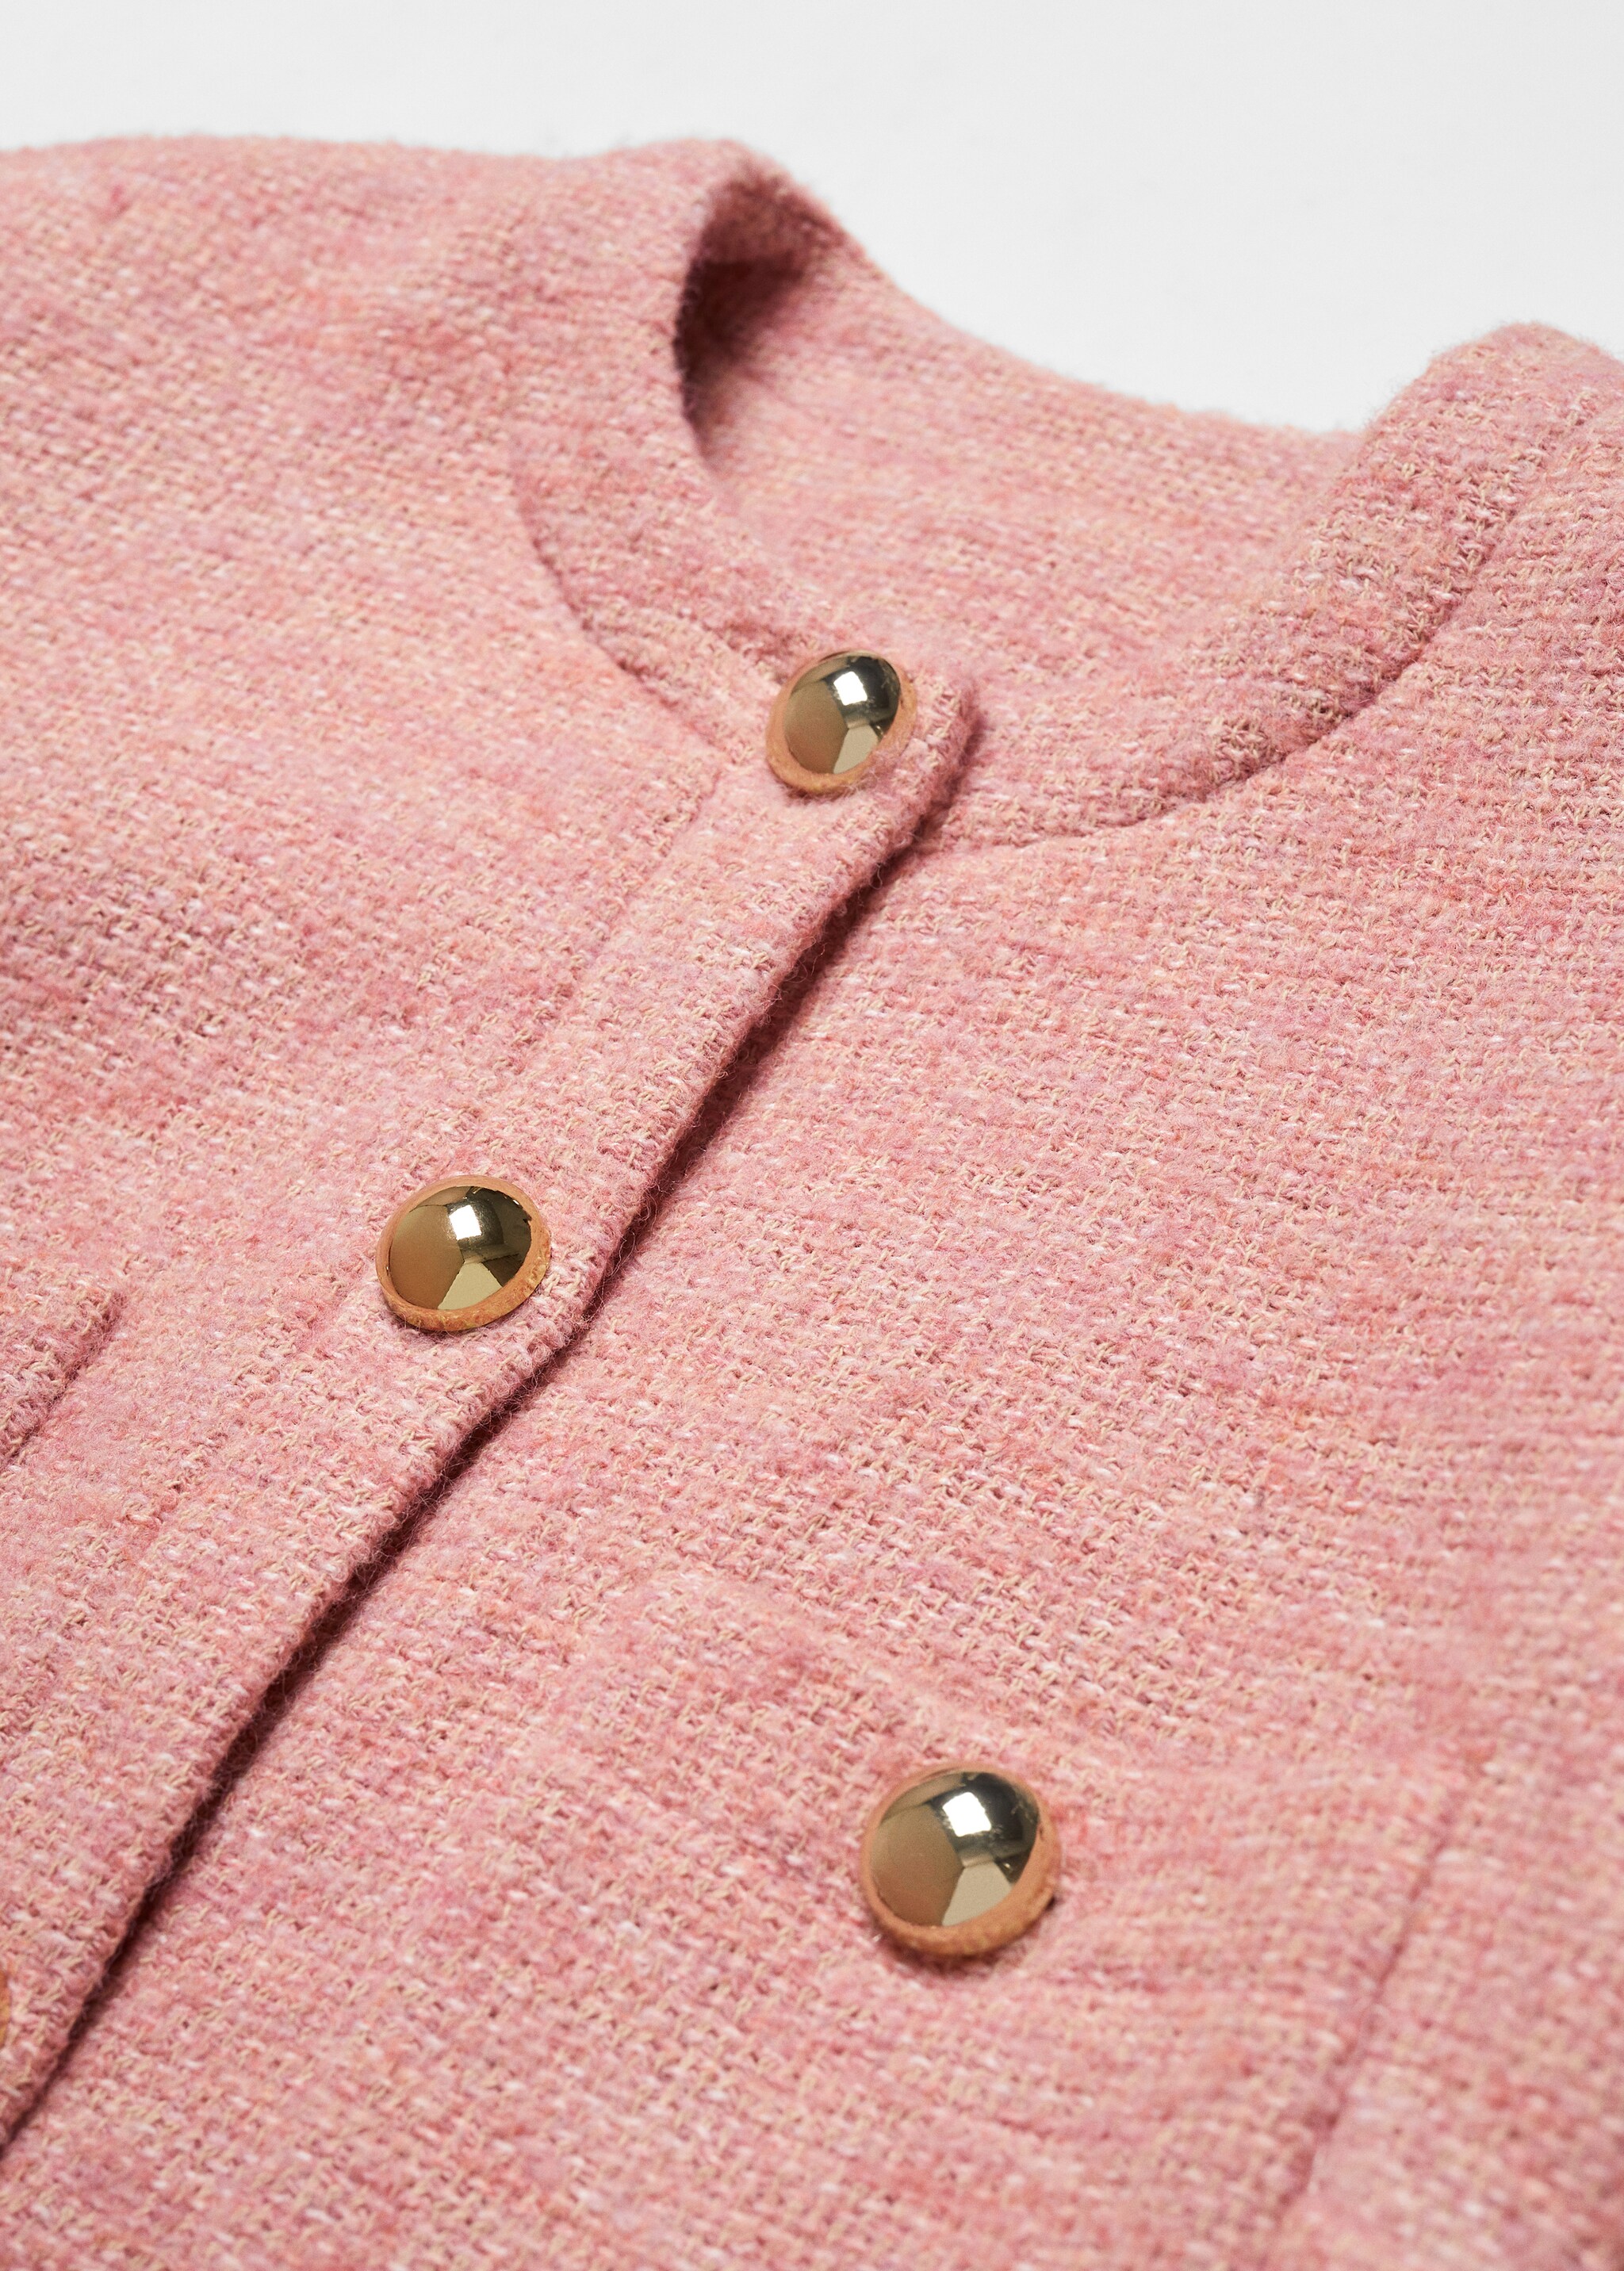 Knitted buttoned jacket - Detaliu al articolului 8